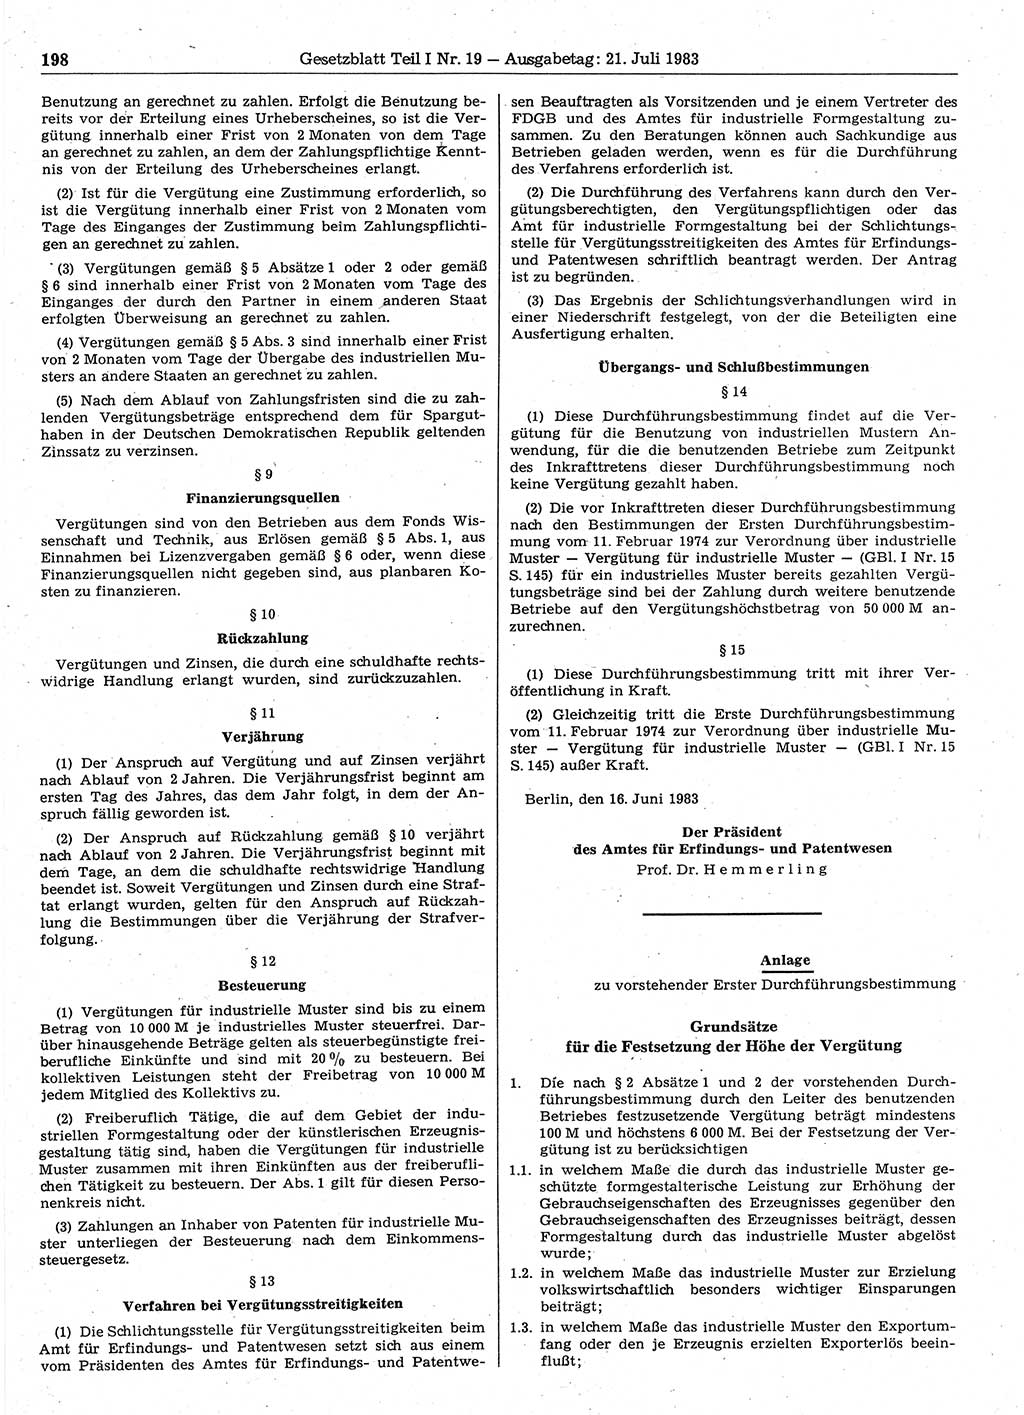 Gesetzblatt (GBl.) der Deutschen Demokratischen Republik (DDR) Teil Ⅰ 1983, Seite 198 (GBl. DDR Ⅰ 1983, S. 198)